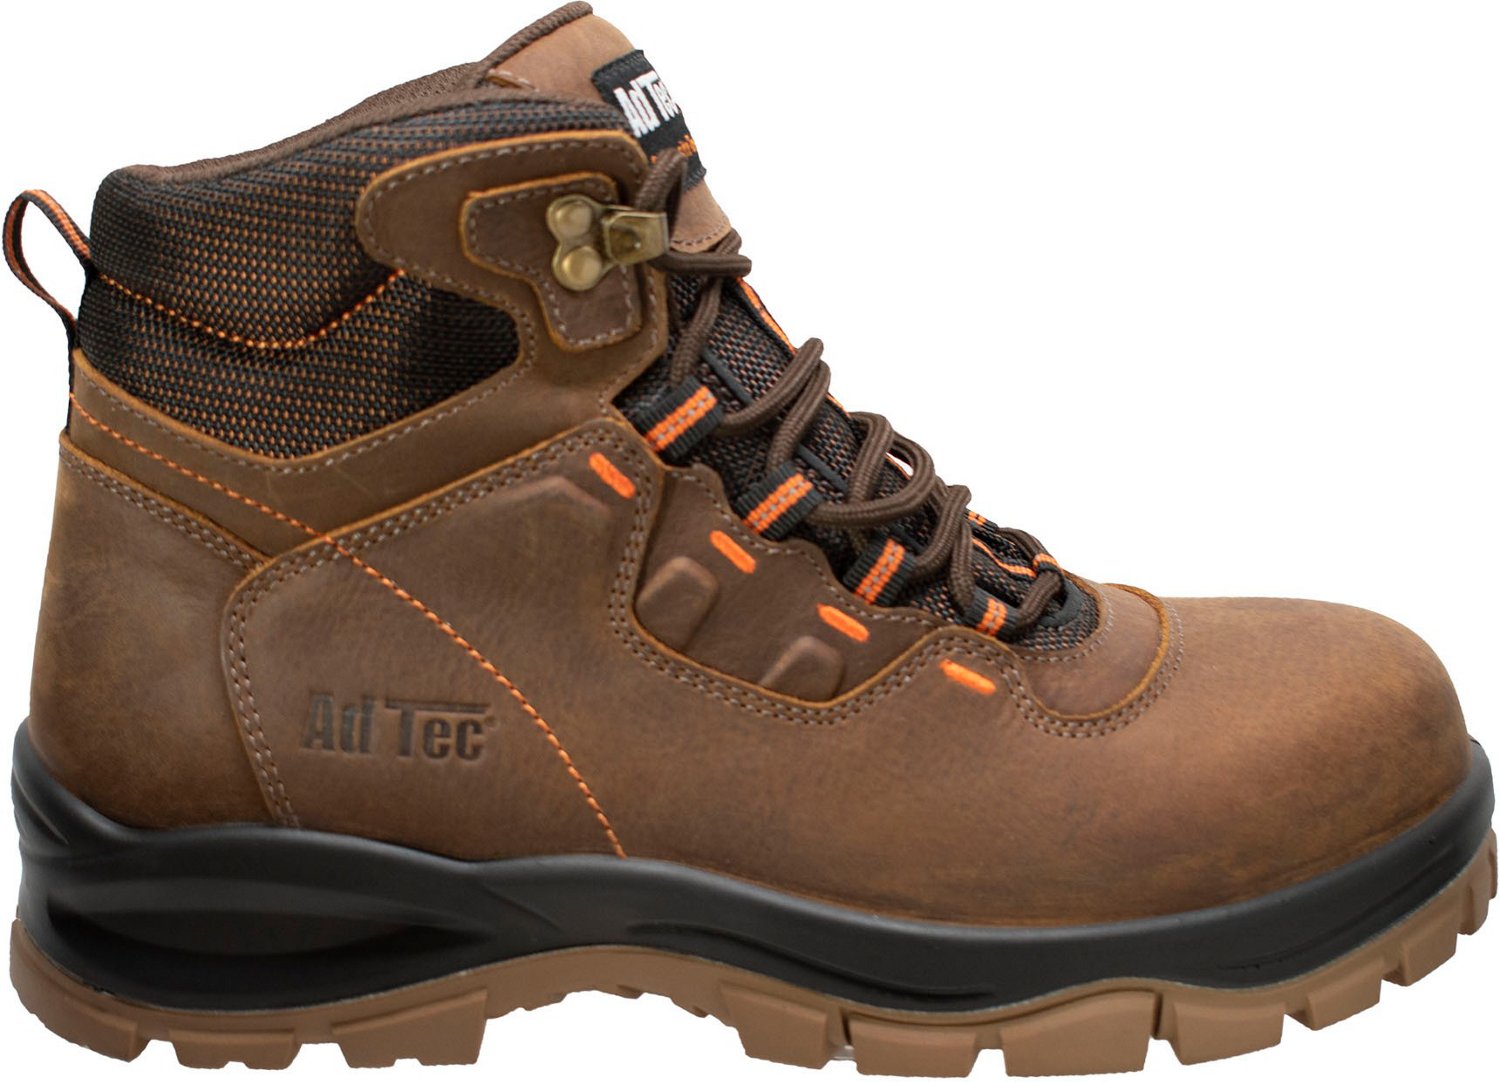 AdTec Men's Waterproof Composite Toe Work Hiker Boots | Academy